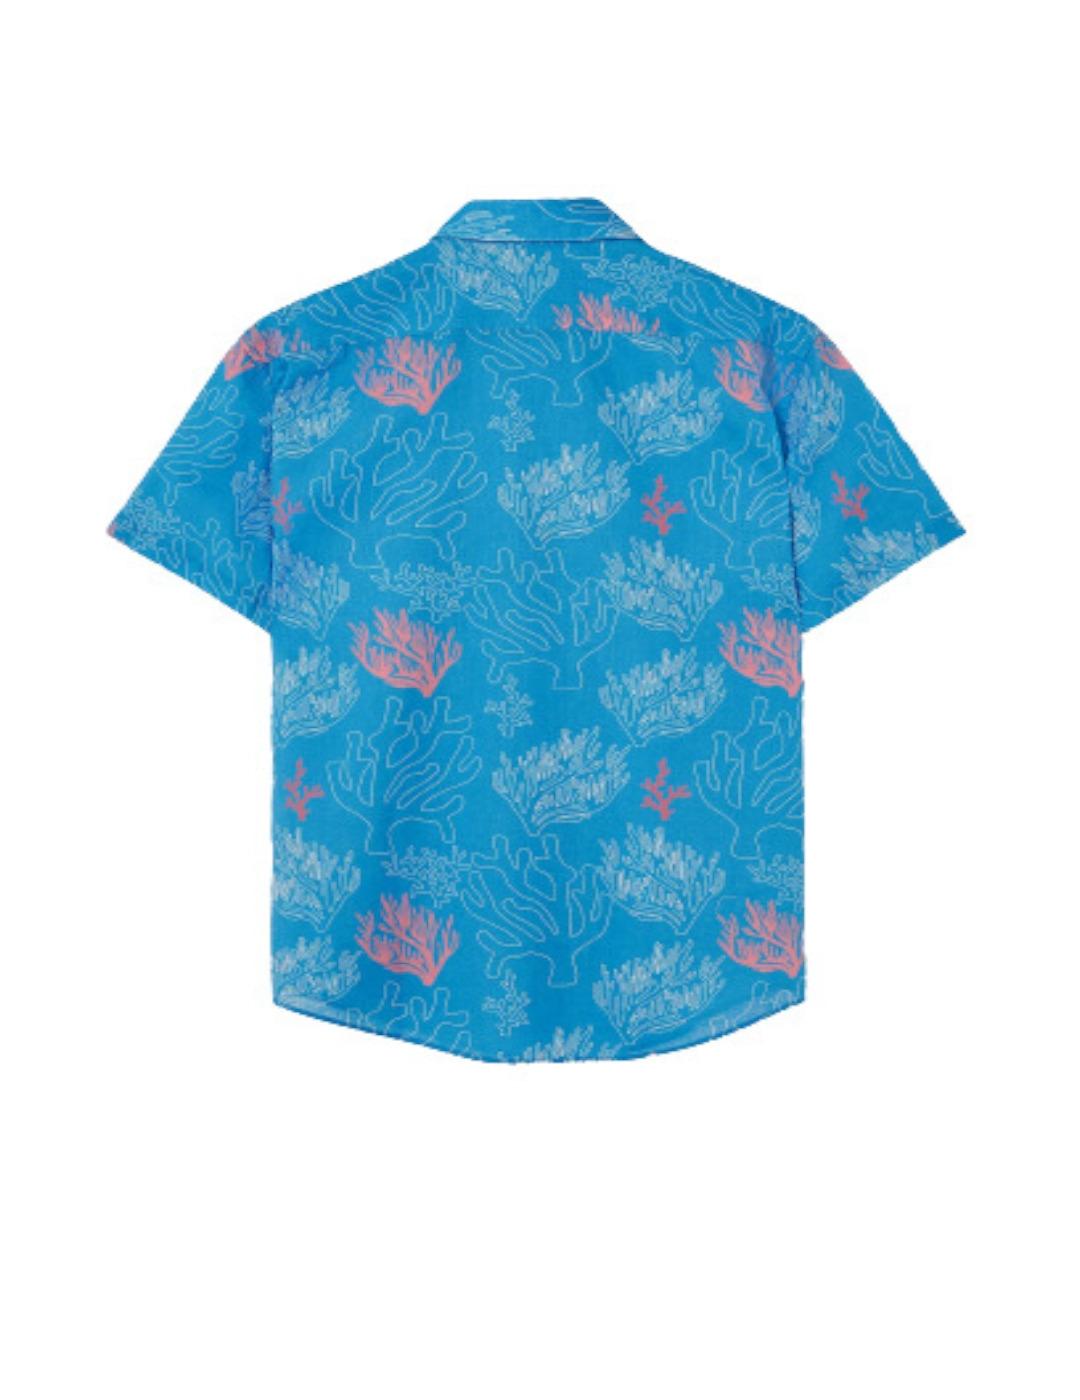 Camisa Crocquer estampado corales manga corta